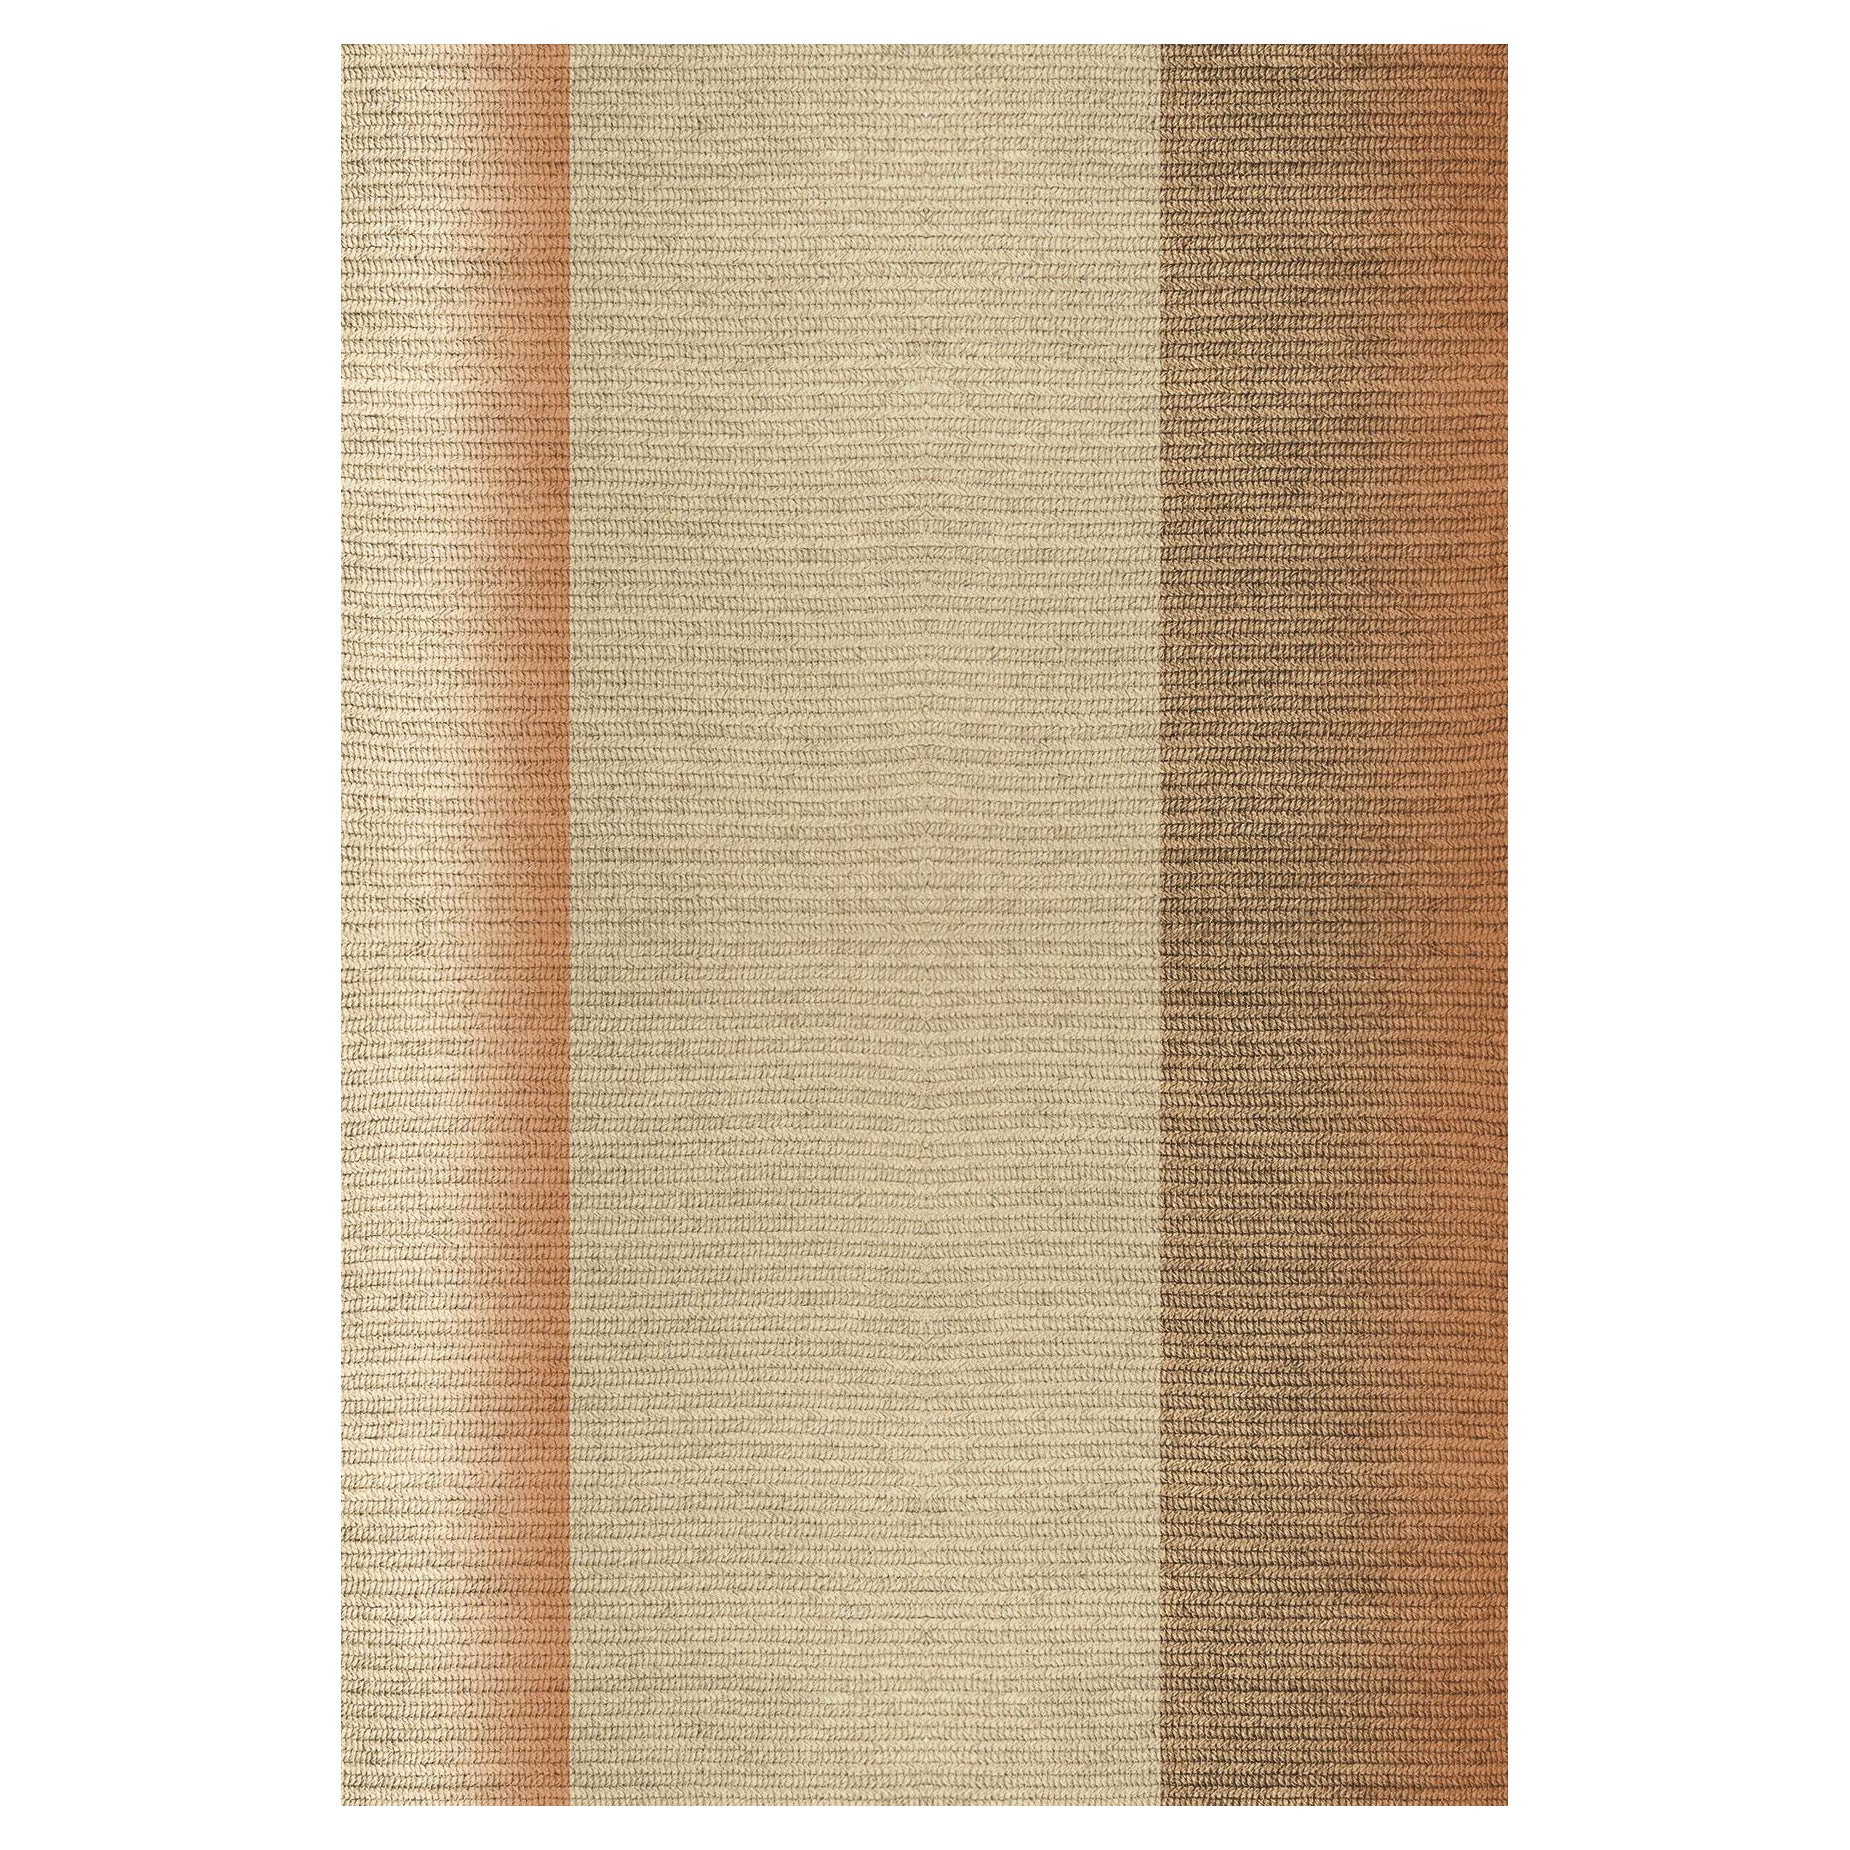 Teppich „Blur“ aus Abaca, Farbe „Mahogany“, 260x390cm, von Claire Vos für Musett Design